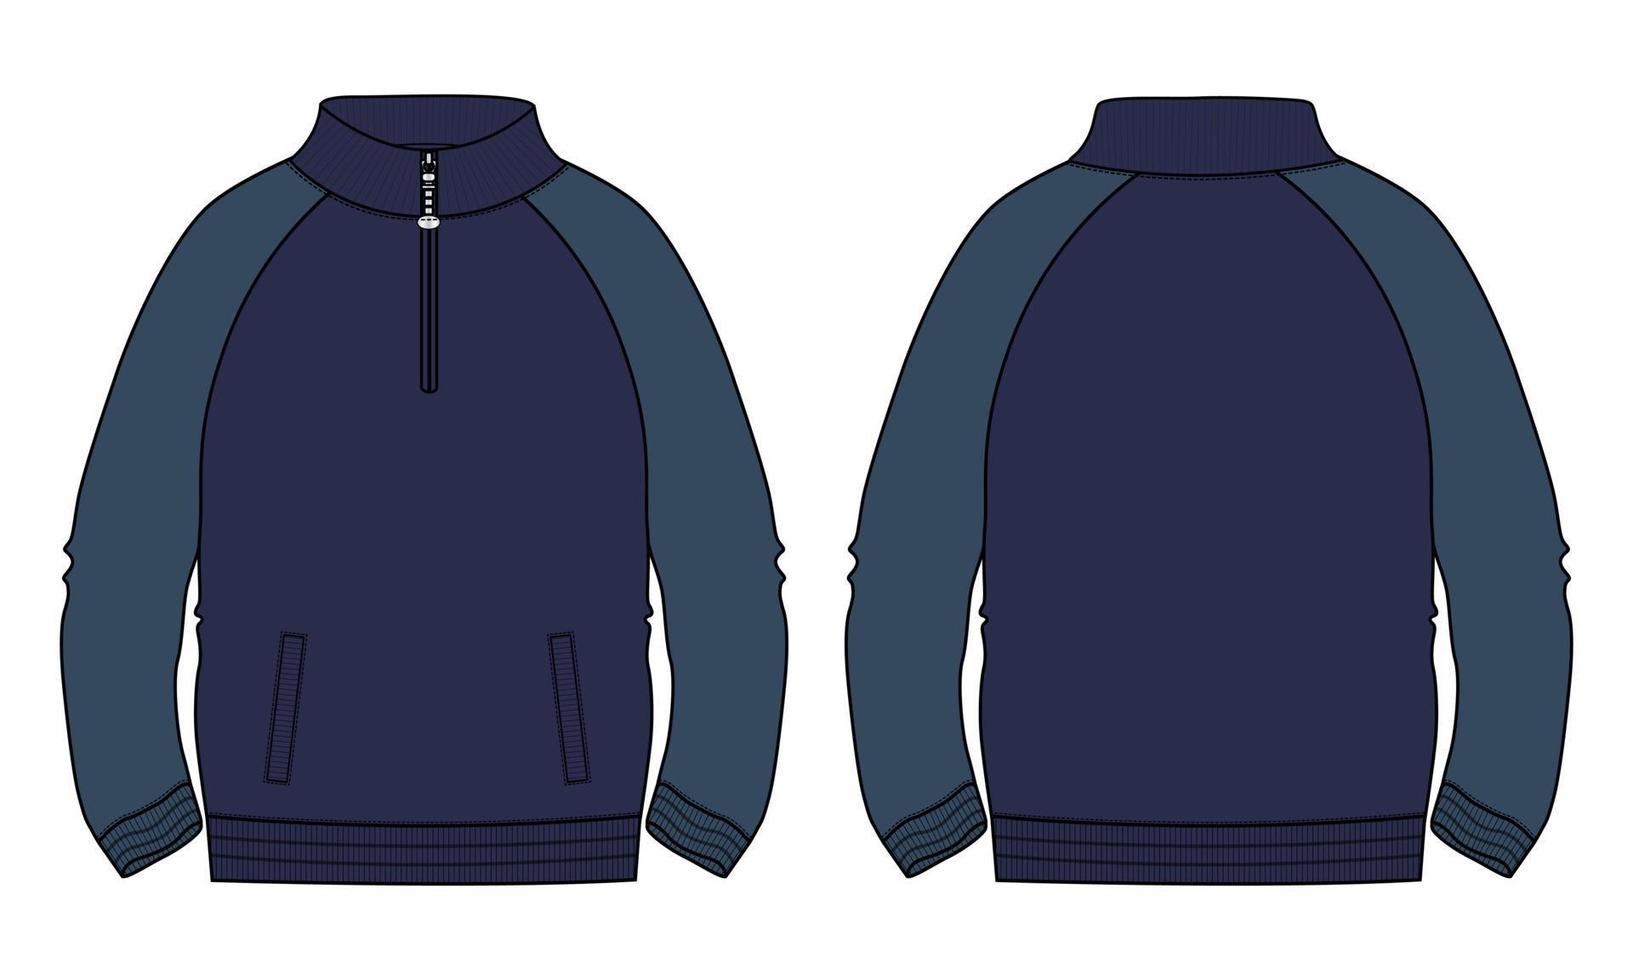 giacca a maniche lunghe di colore blu navy a due toni con tasca e cerniera tecnica moda disegno piatto illustrazione vettoriale modello vista anteriore e posteriore. giacca felpa in jersey di pile per uomo e bambino